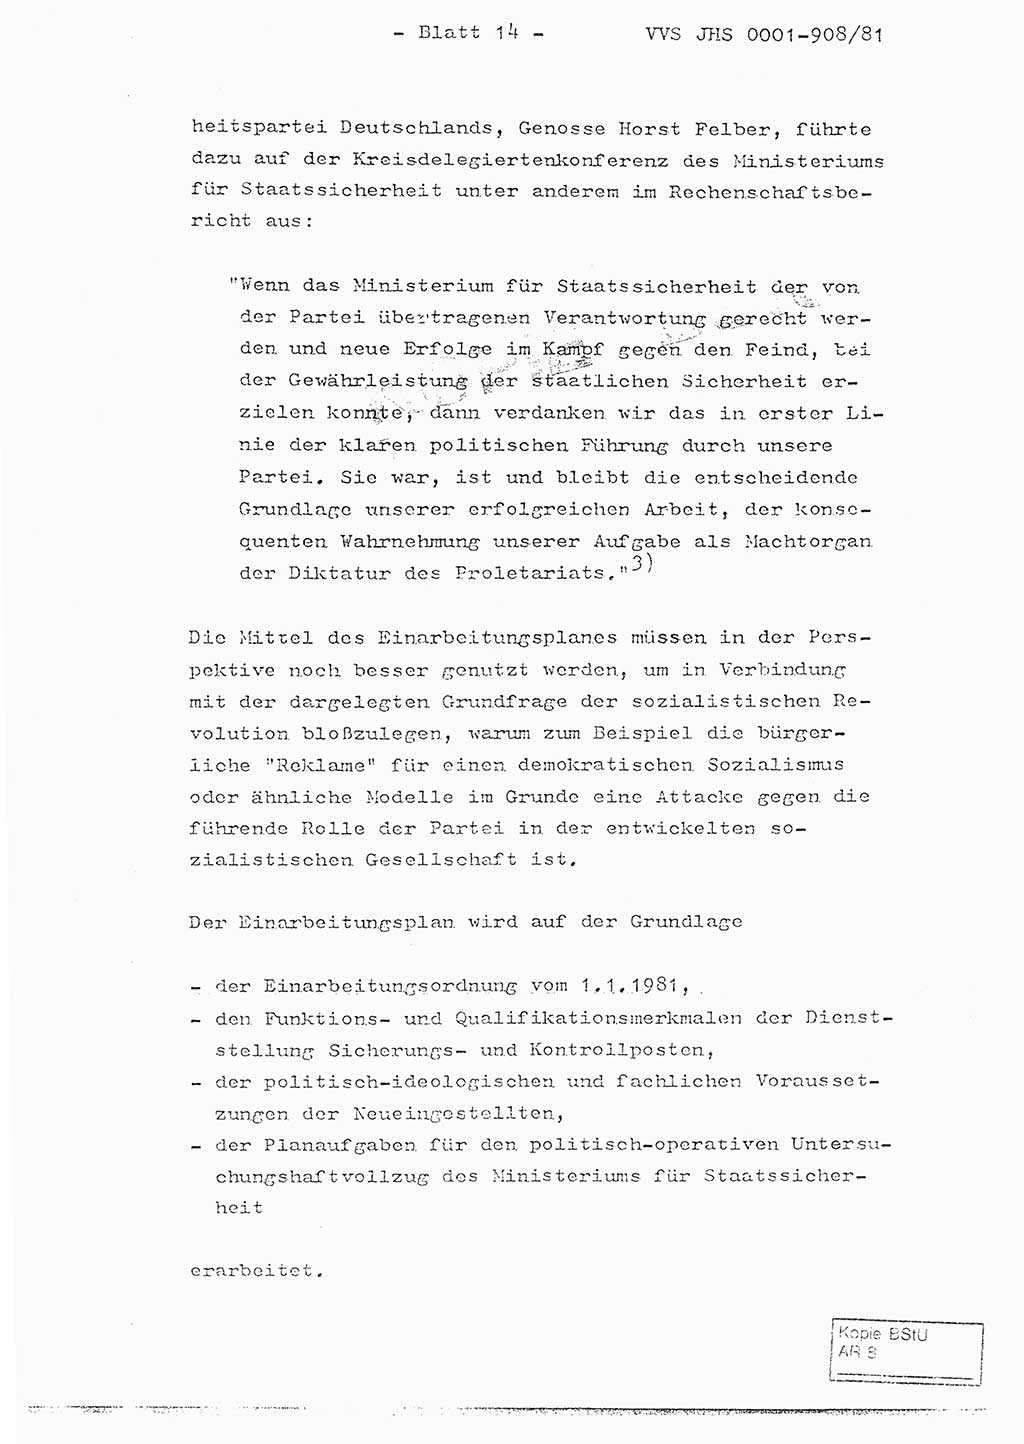 Fachschulabschlußarbeit Oberleutnant Wolfgang Wittmann (Abt. ⅩⅣ), Ministerium für Staatssicherheit (MfS) [Deutsche Demokratische Republik (DDR)], Juristische Hochschule (JHS), Vertrauliche Verschlußsache (VVS) o001-908/82, Potsdam 1982, Blatt 14 (FS-Abschl.-Arb. MfS DDR JHS VVS o001-908/82 1982, Bl. 14)